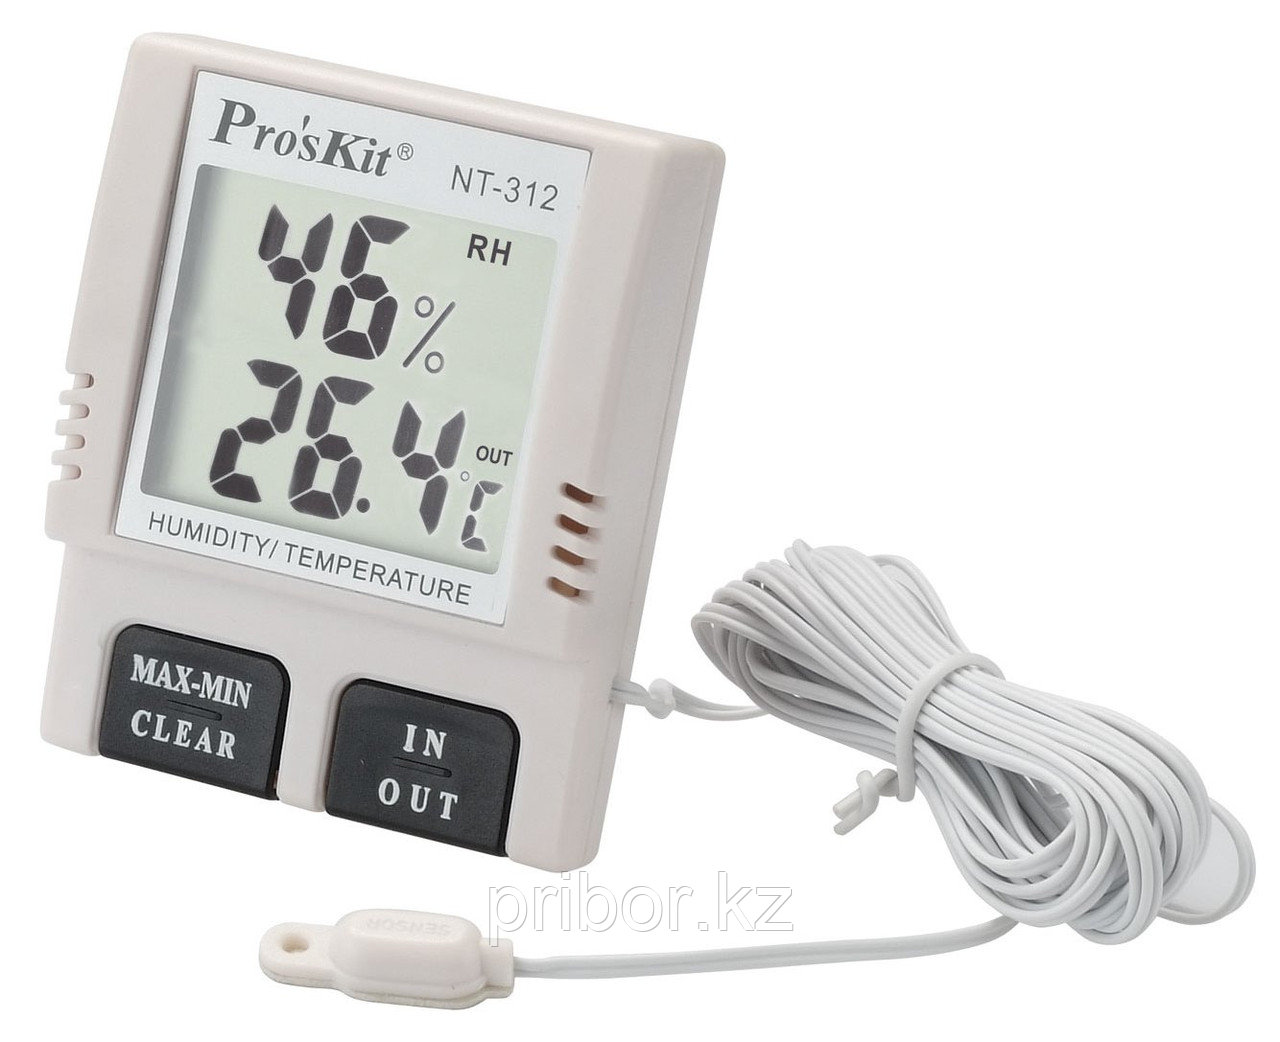 Pro`skit NT-312 Цифровой измеритель температуры и влажности